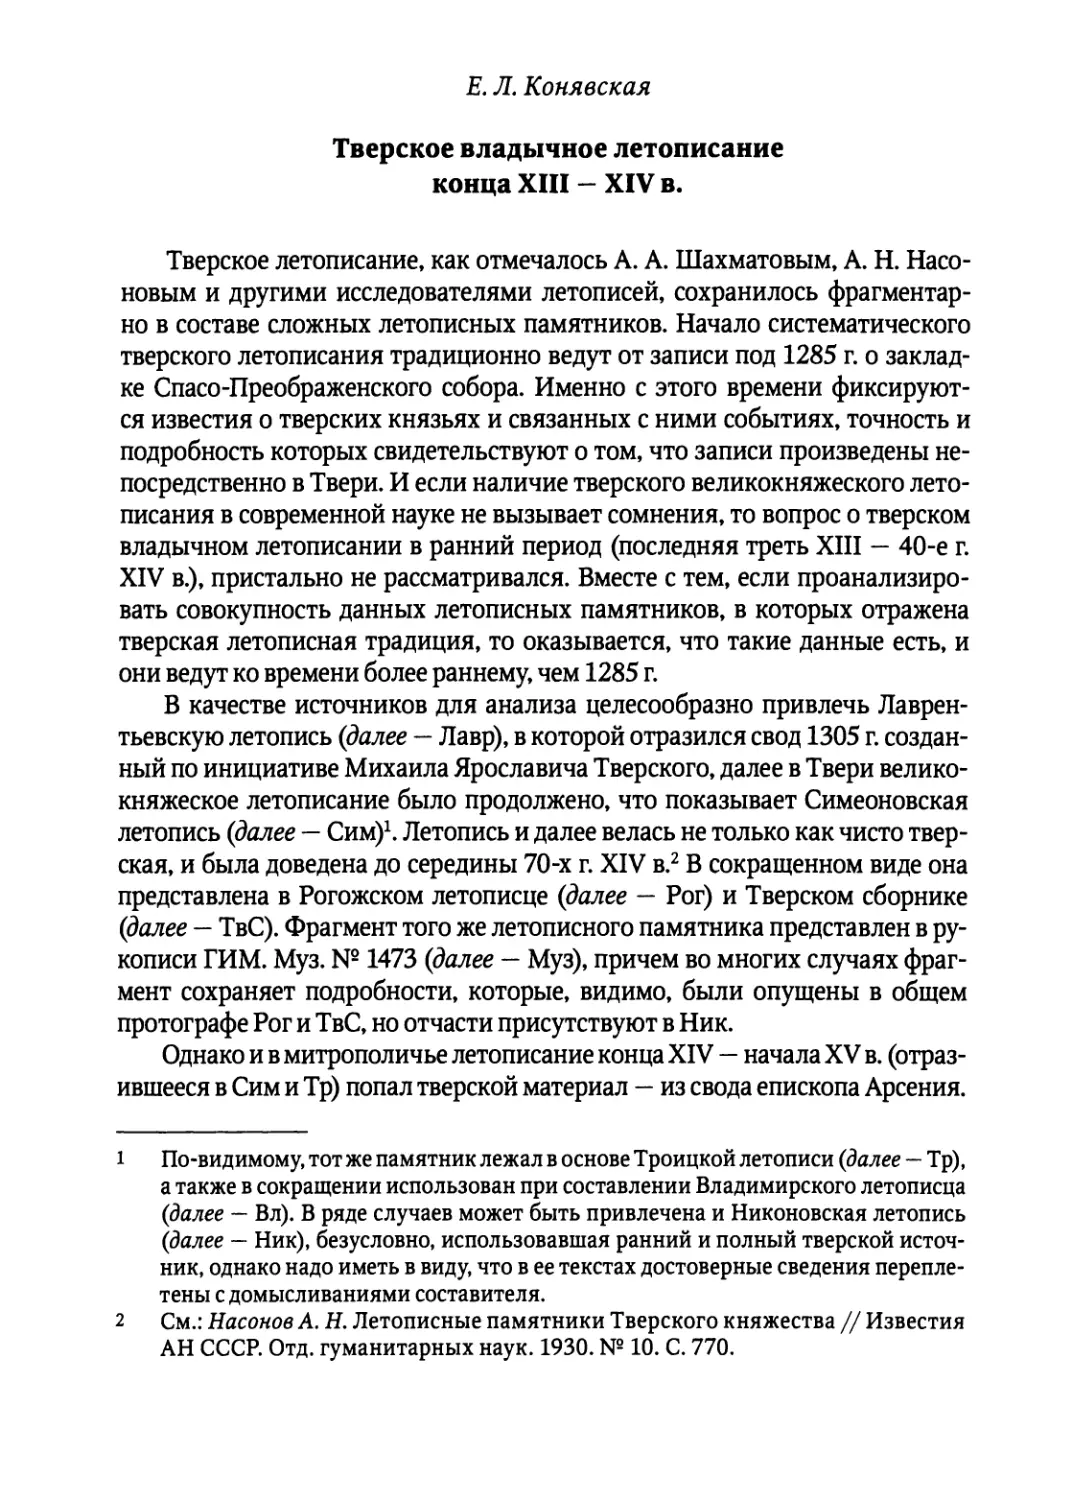 Конявская Е.Л. Тверское владычное летописание конца XIII-XIV в